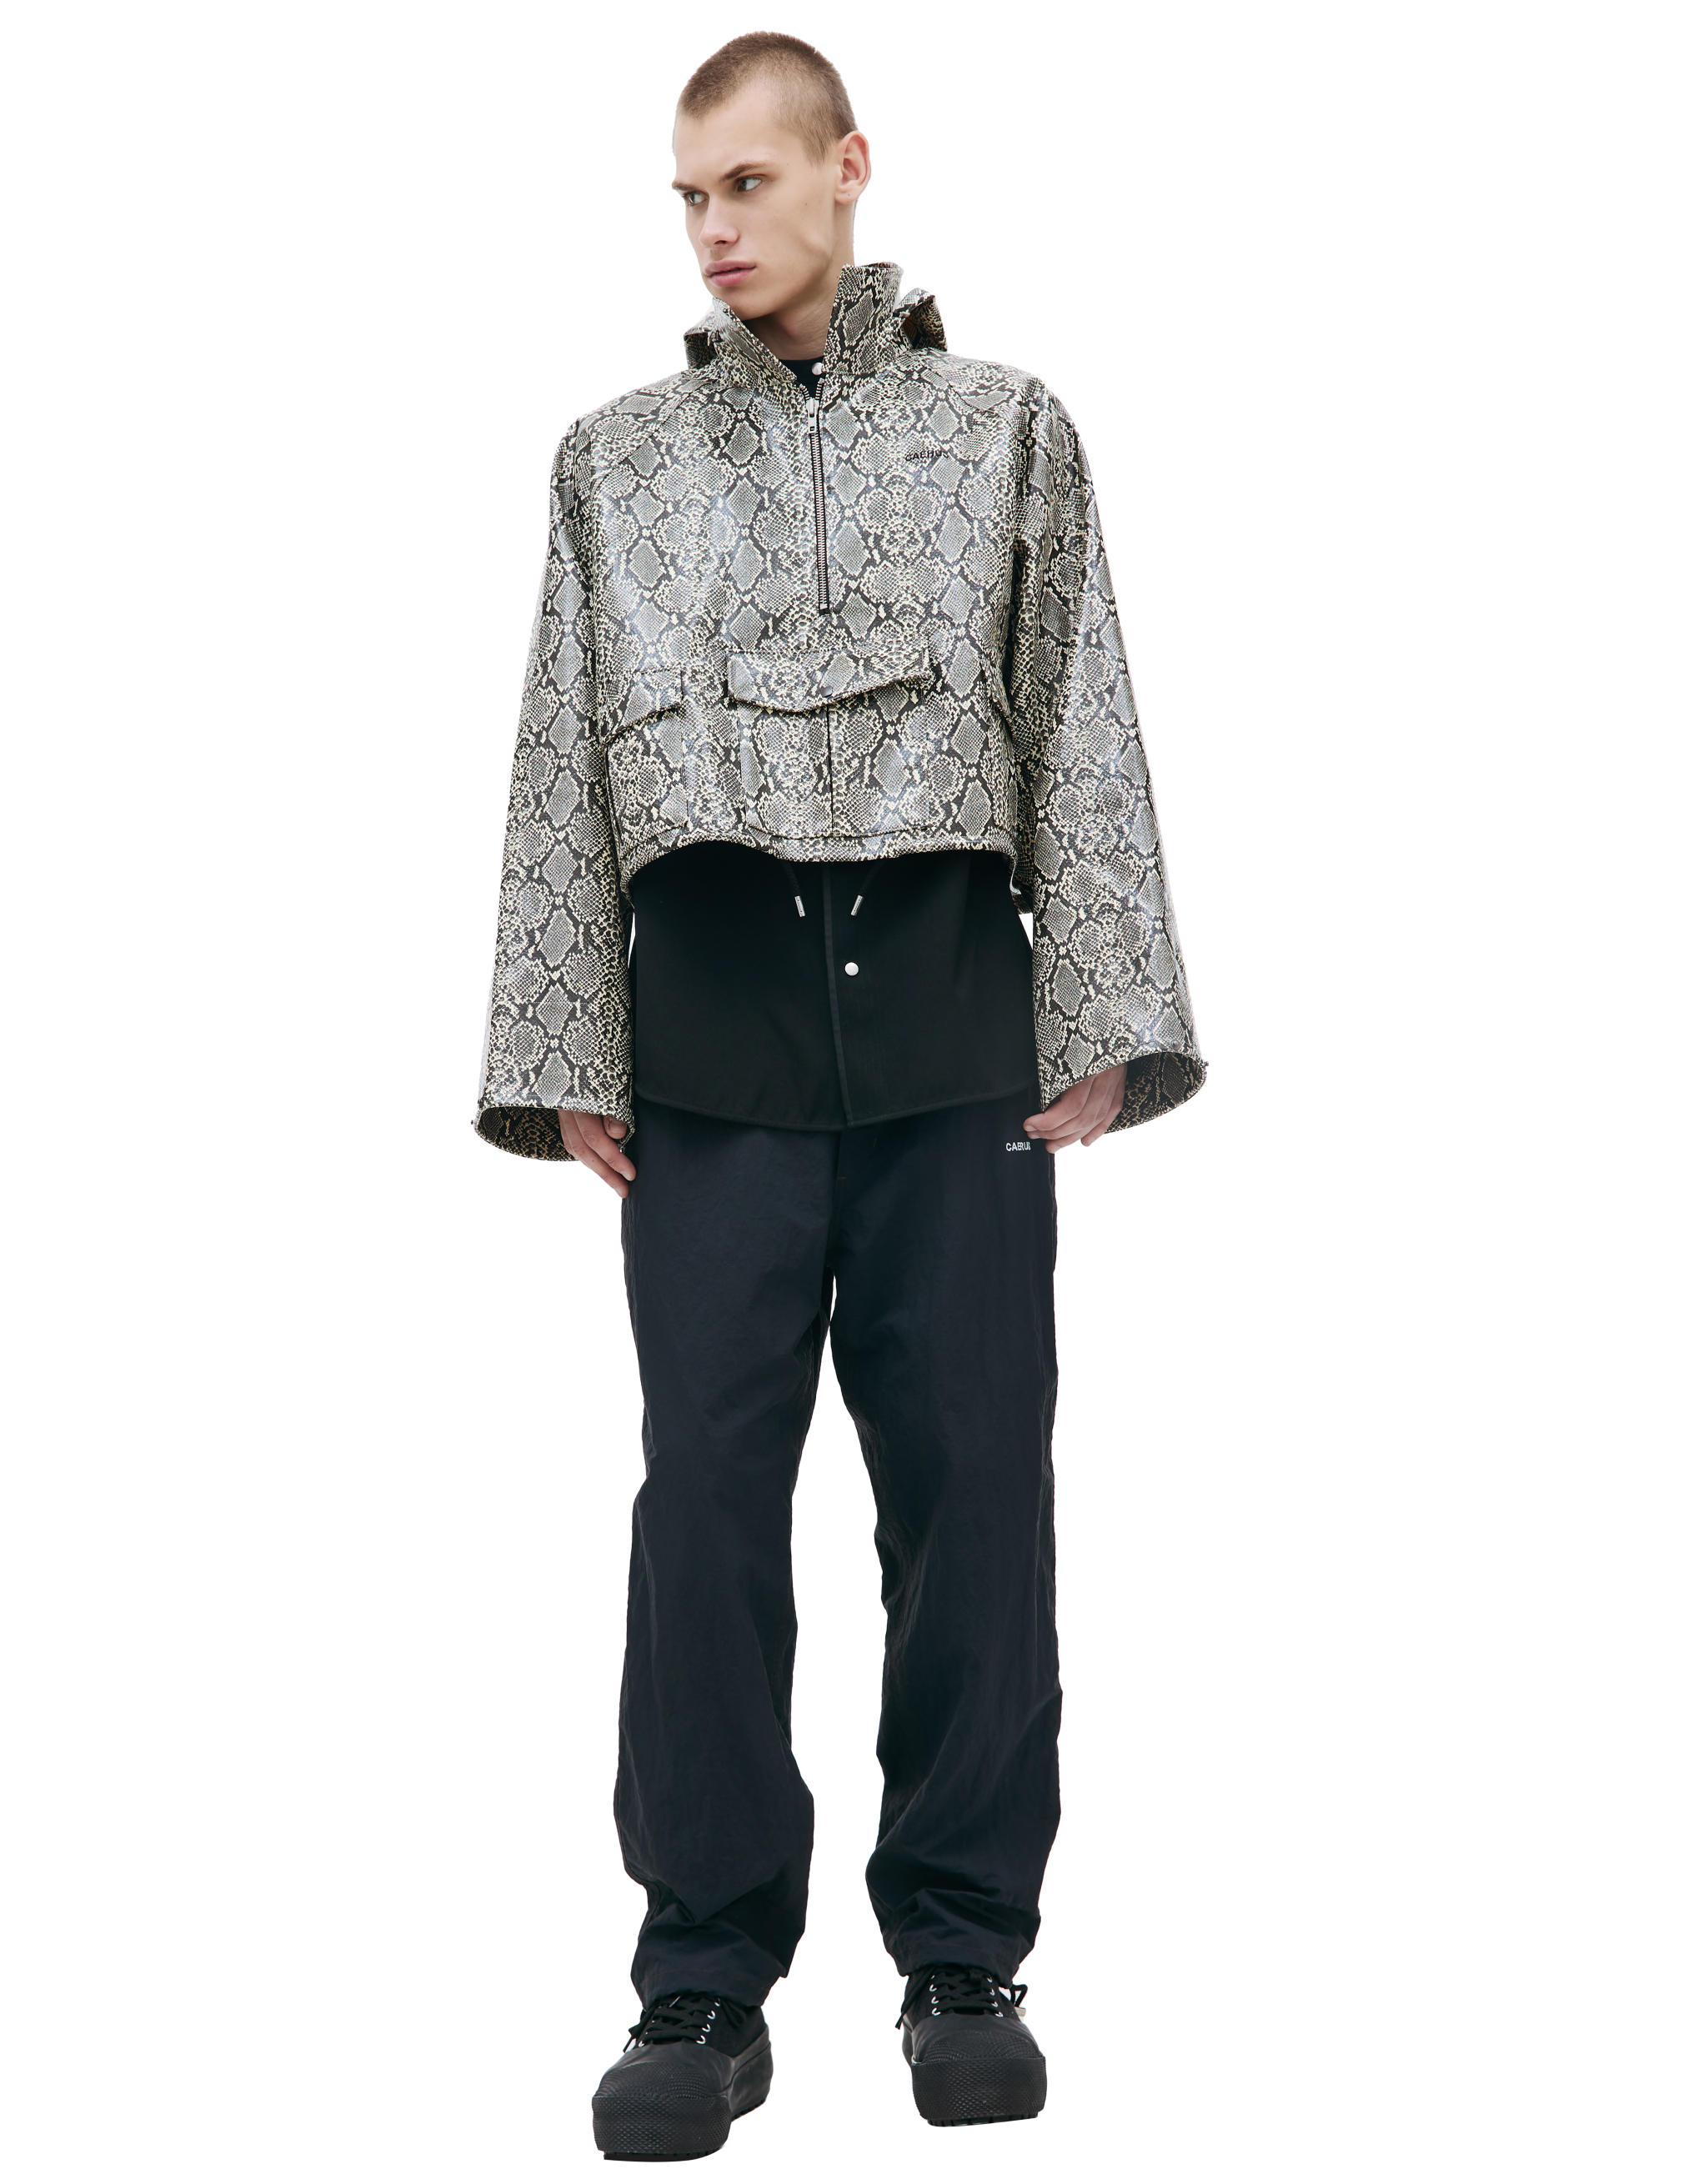 Куртка - анорак с анималистичным принтом CAERUS JK-001/BEIGE, размер 3 JK-001/BEIGE - фото 1